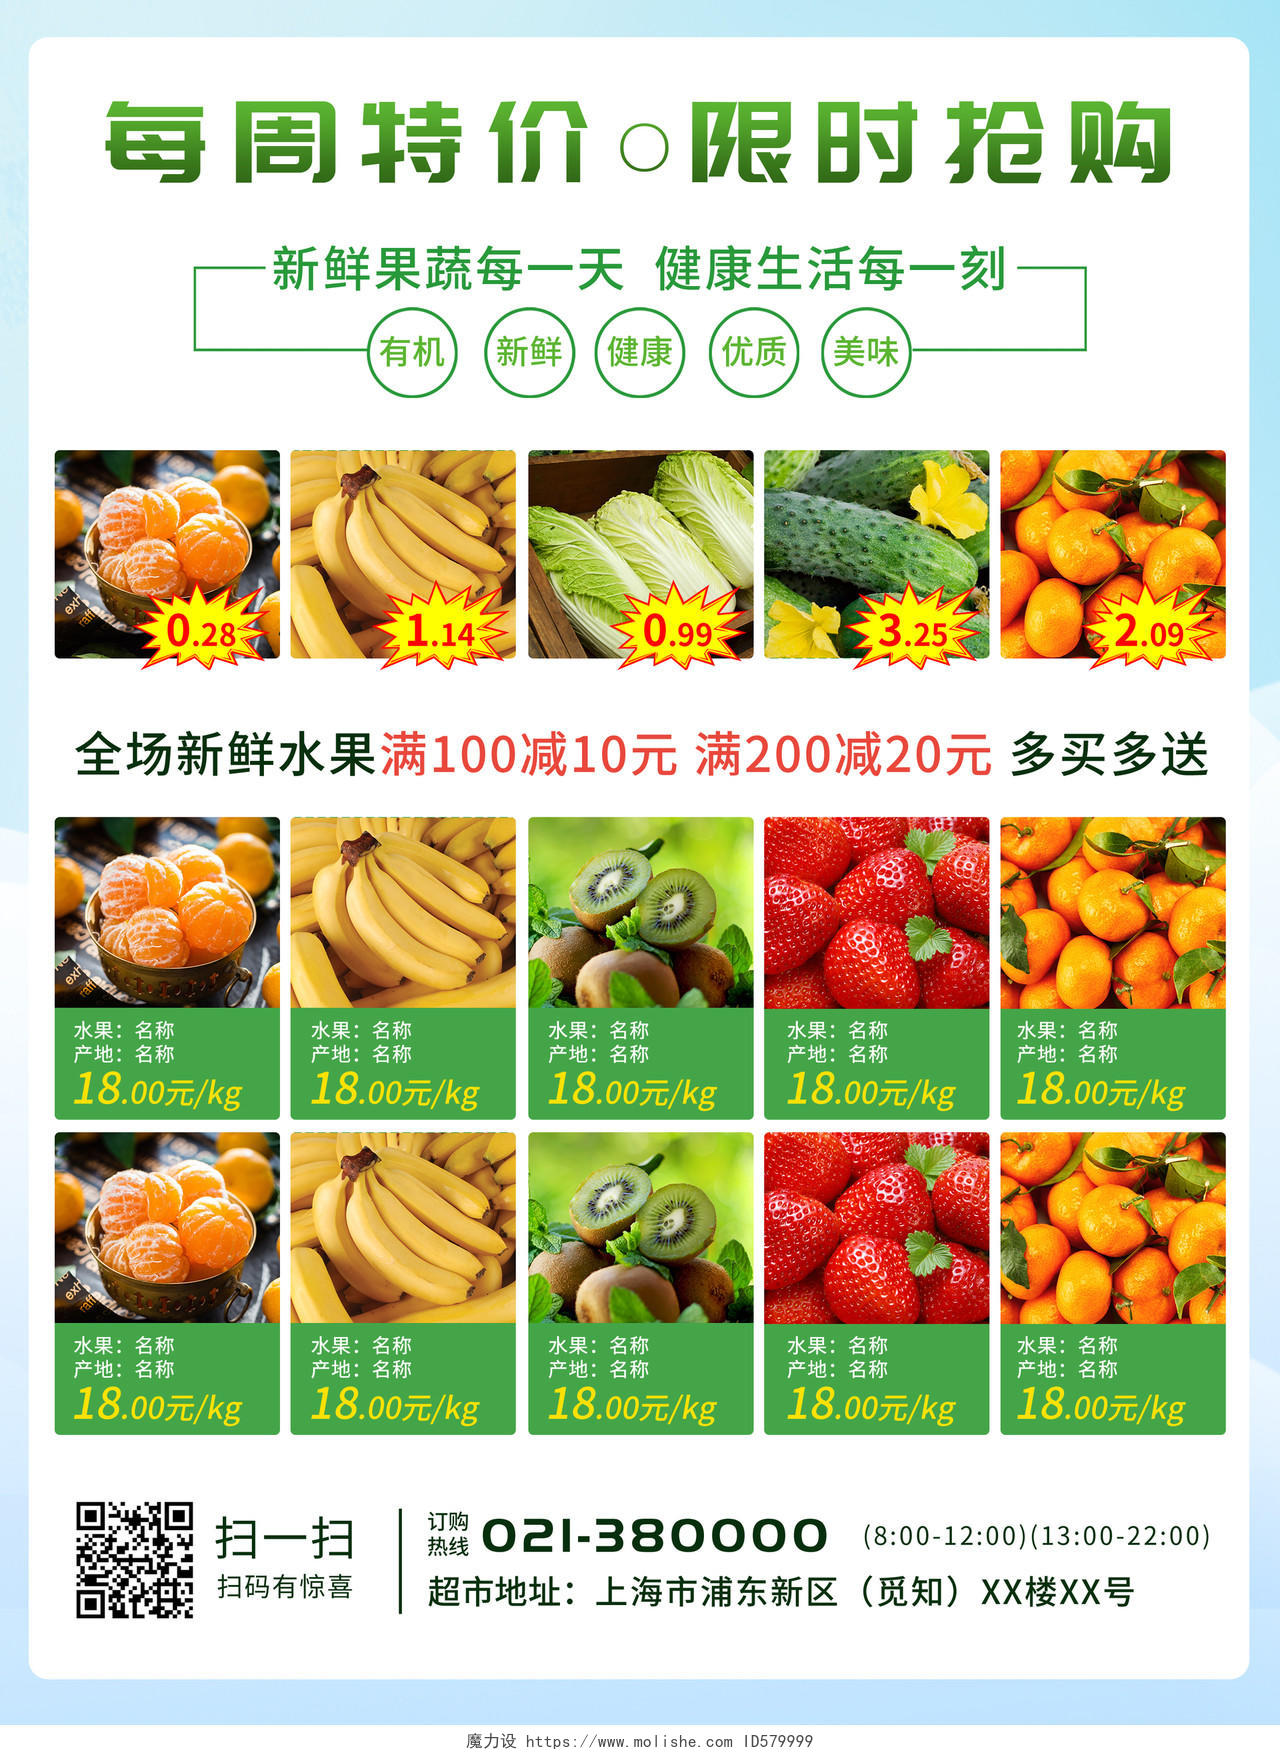 绿色背景超市限时特惠蔬菜水果每周特价限时抢购超市宣传单